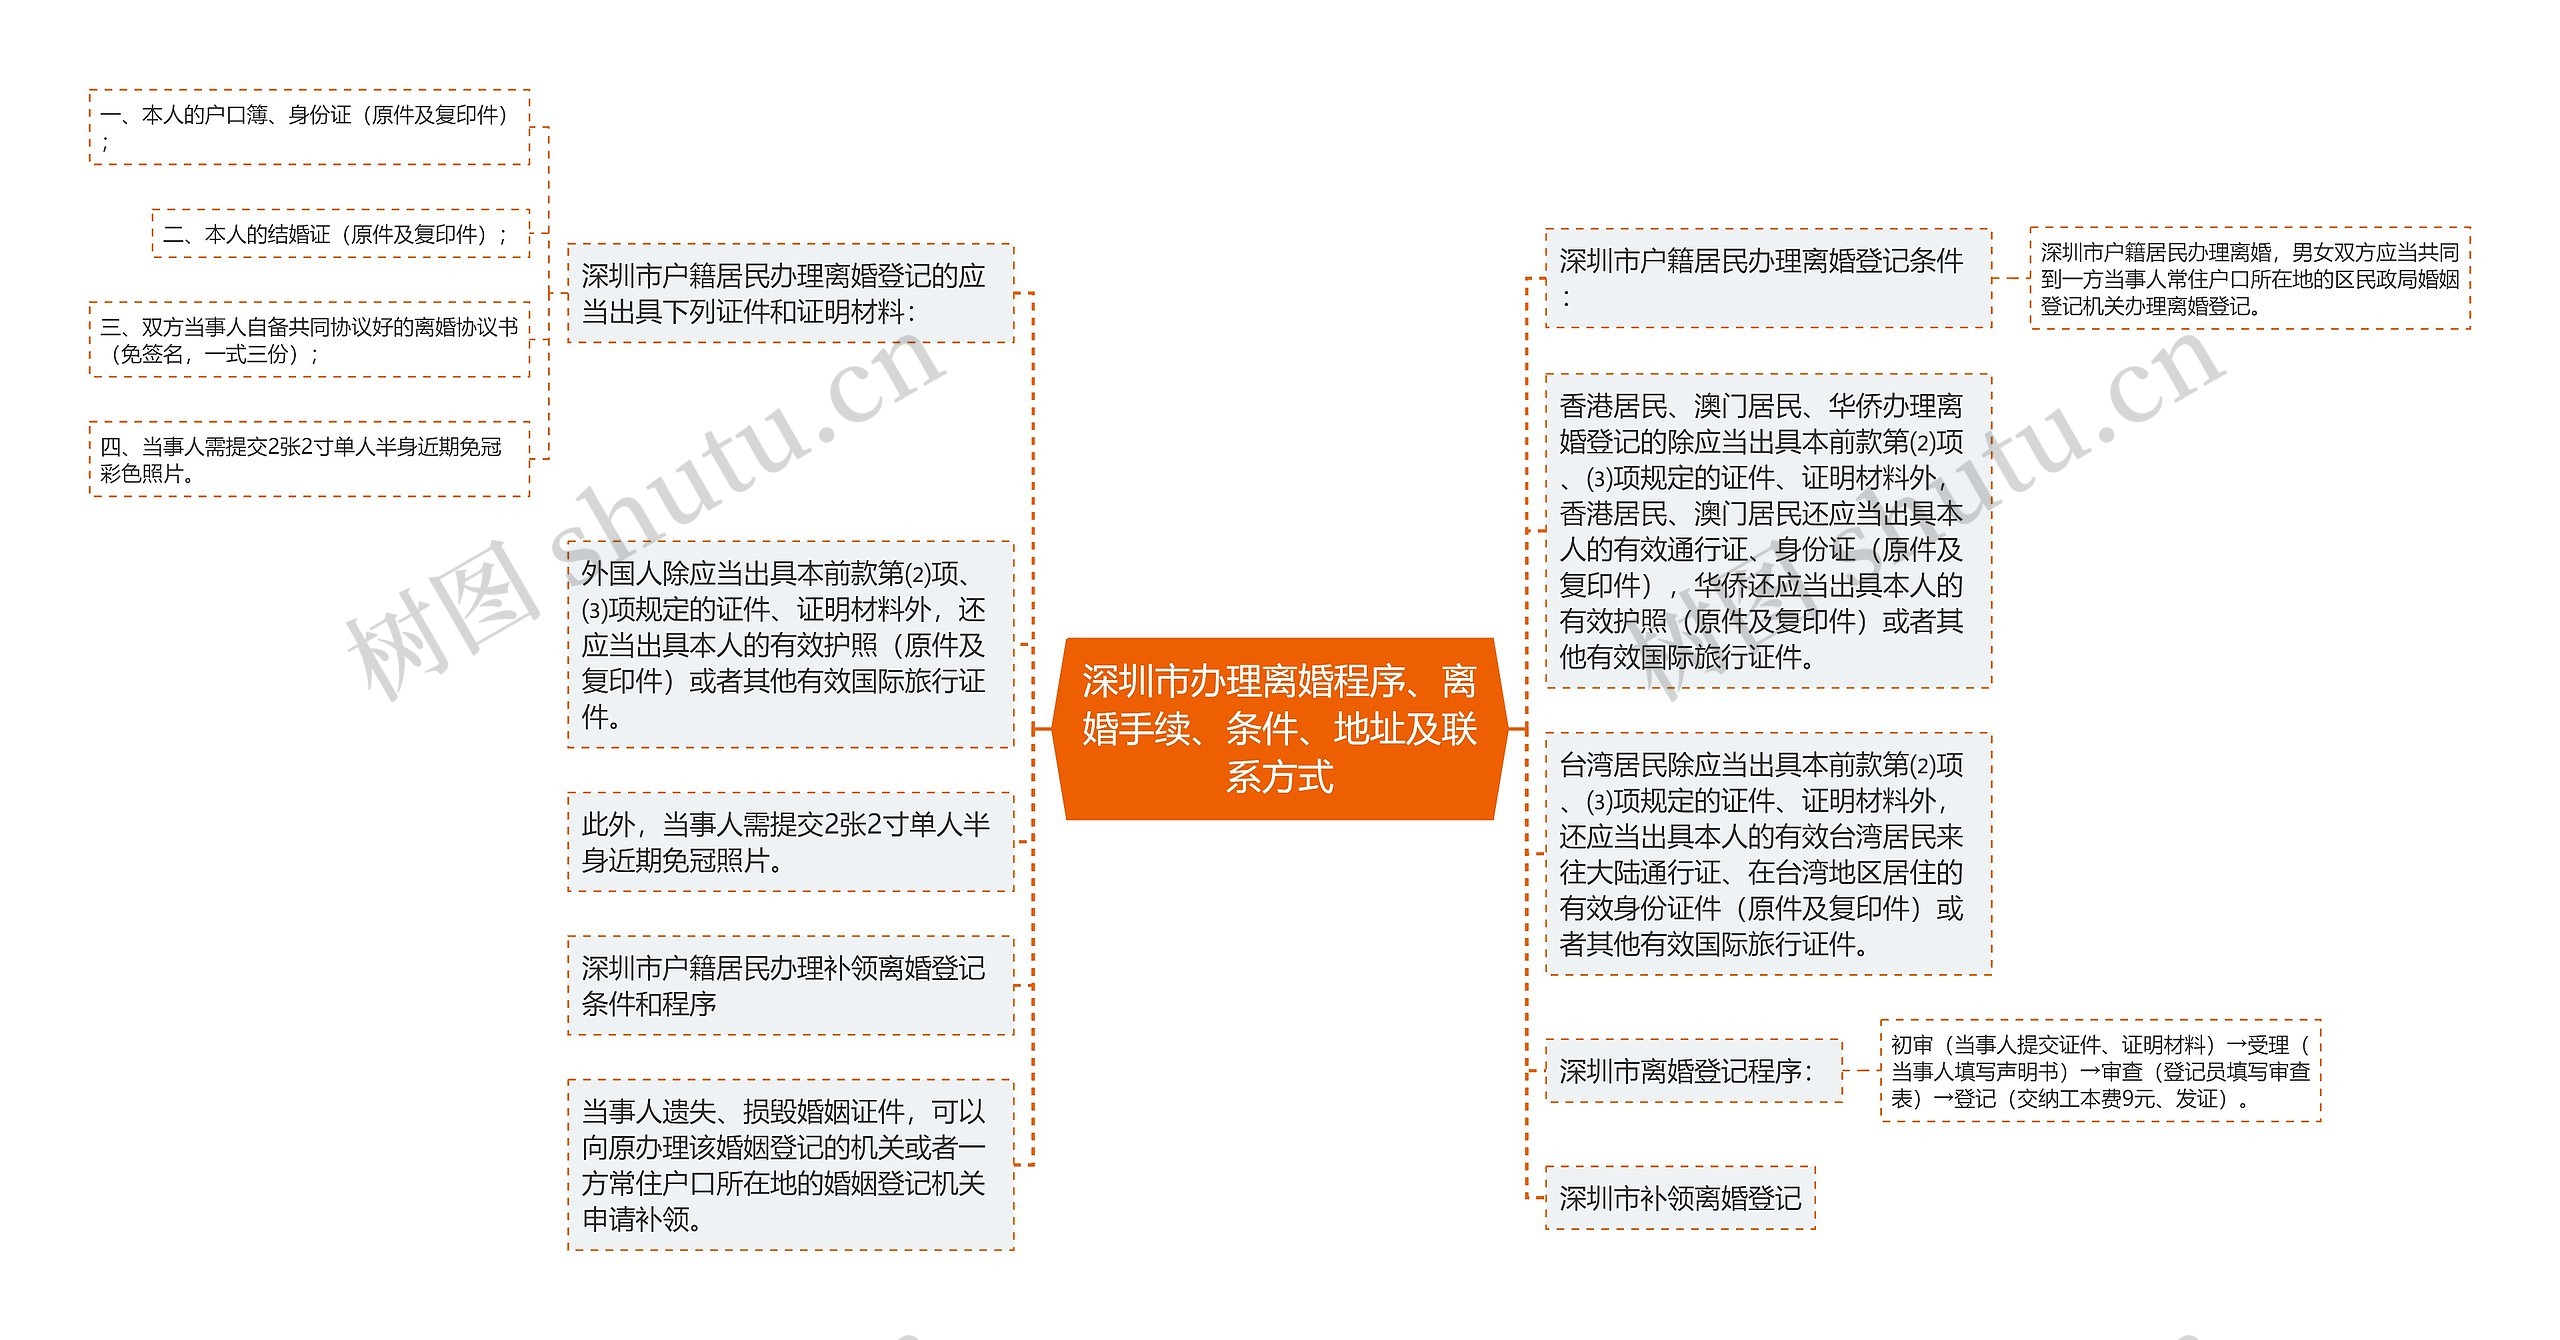 深圳市办理离婚程序、离婚手续、条件、地址及联系方式思维导图